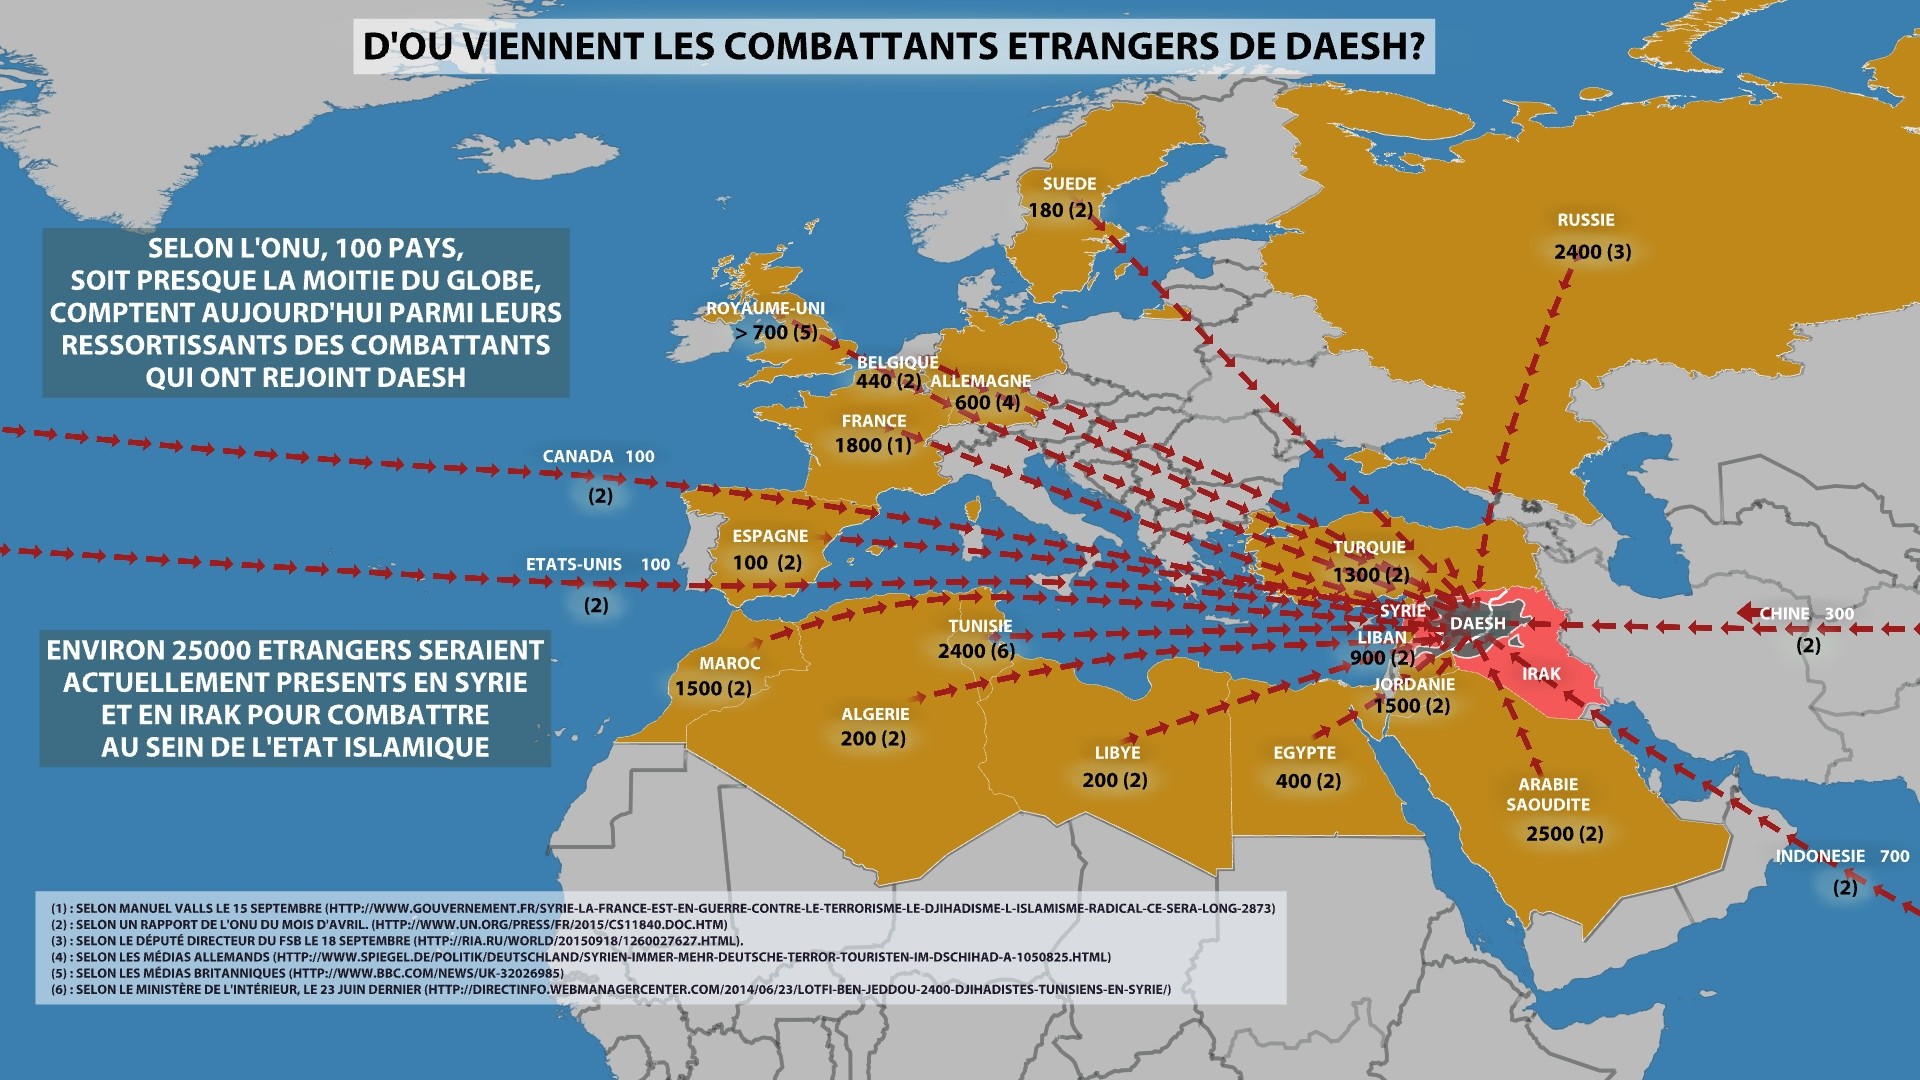 La Belgique, premier fournisseur de recrues à Daesh par habitant, selon les Nations-Unies